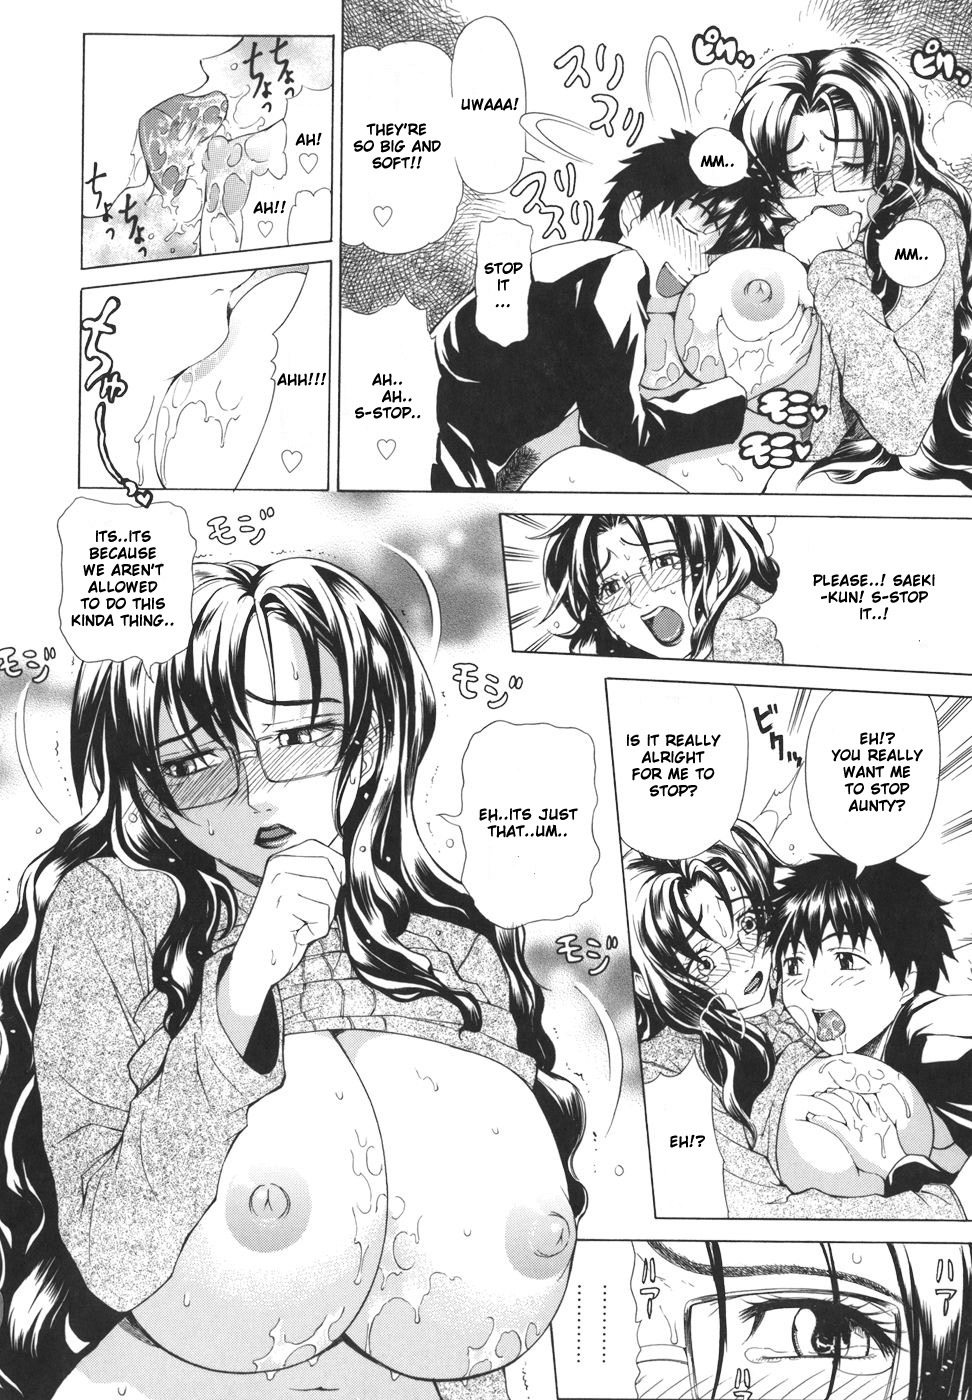 Pearl Rose 15 hentai manga